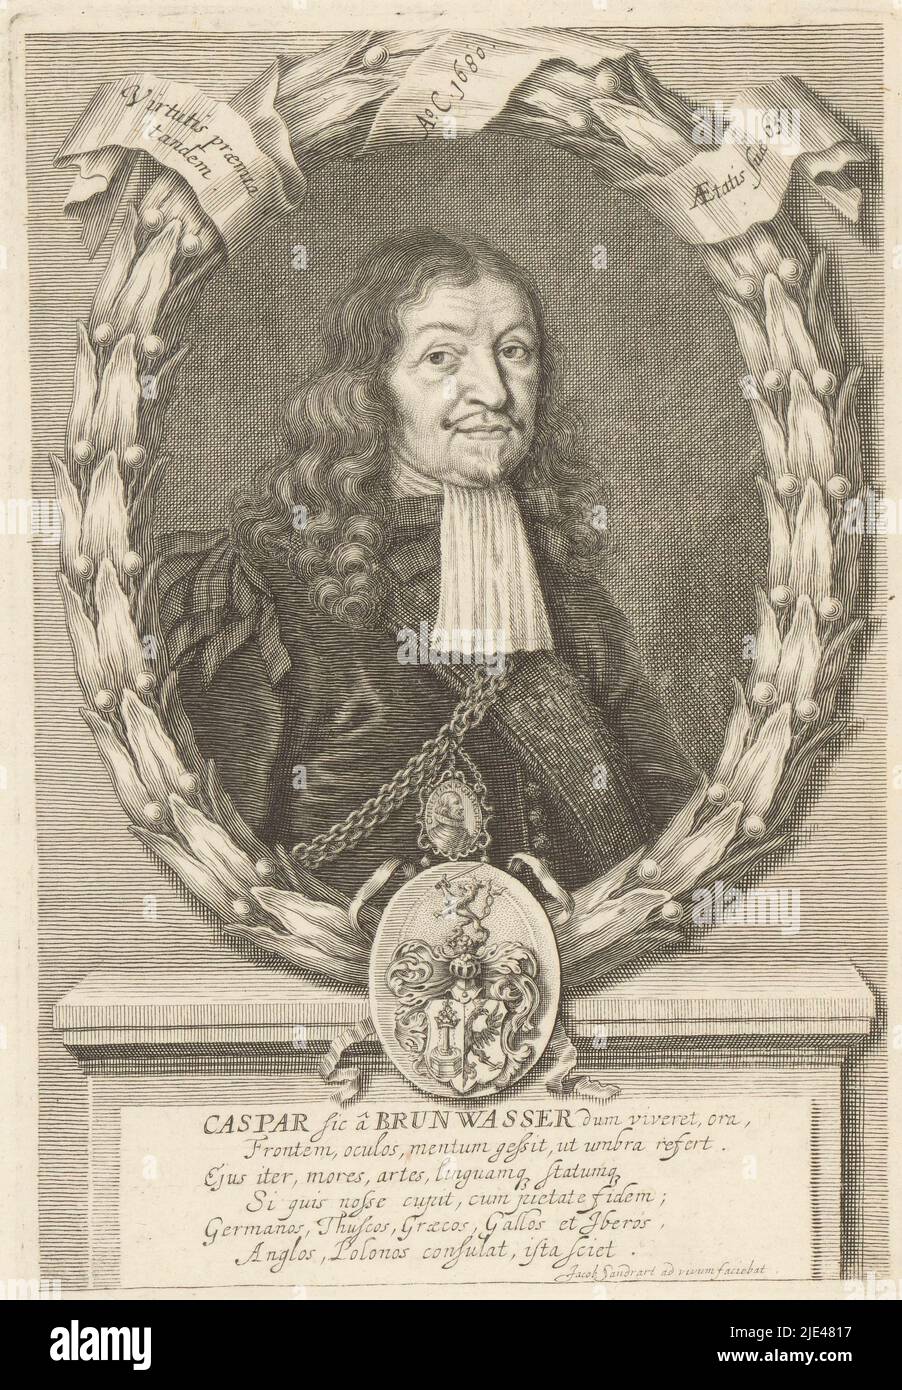 Portrait de Caspar von Brunwasser, Jakob von Sandrart, 1680, imprimerie: Jakob von Sandrart, (mentionné sur l'objet), 1680, papier, gravure, h 205 mm - l 140 mm Banque D'Images